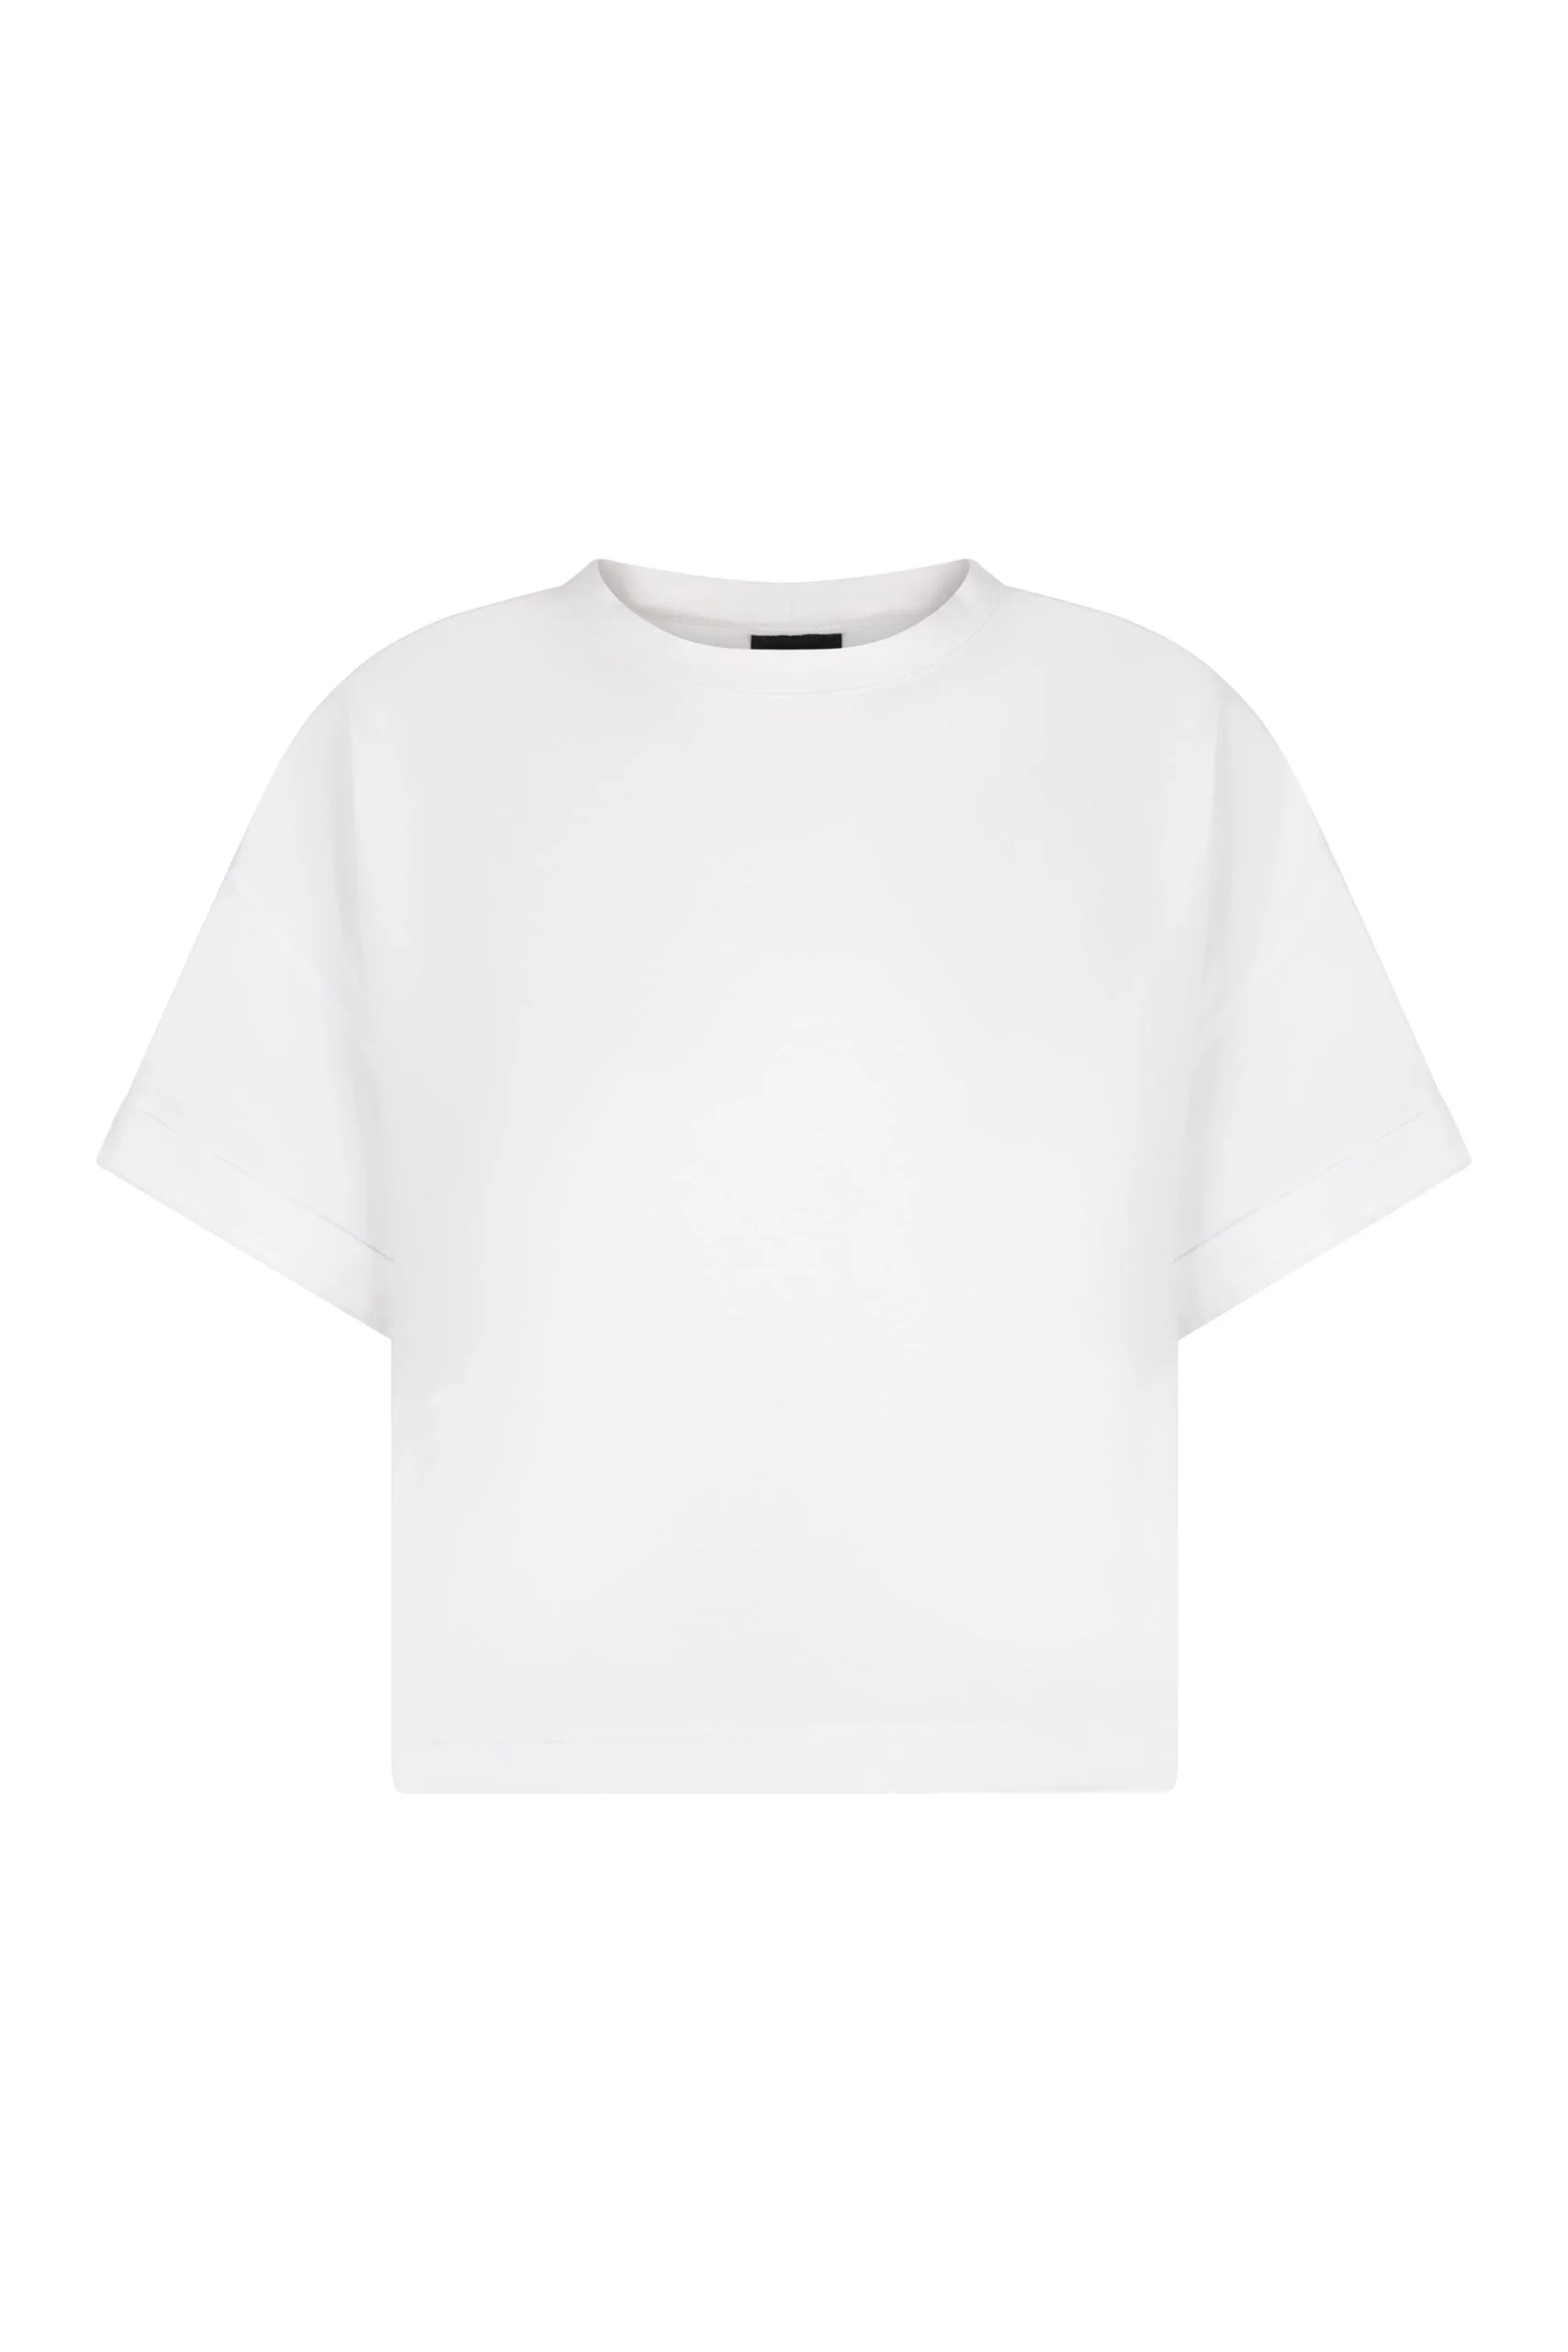 biały t-shirt damski